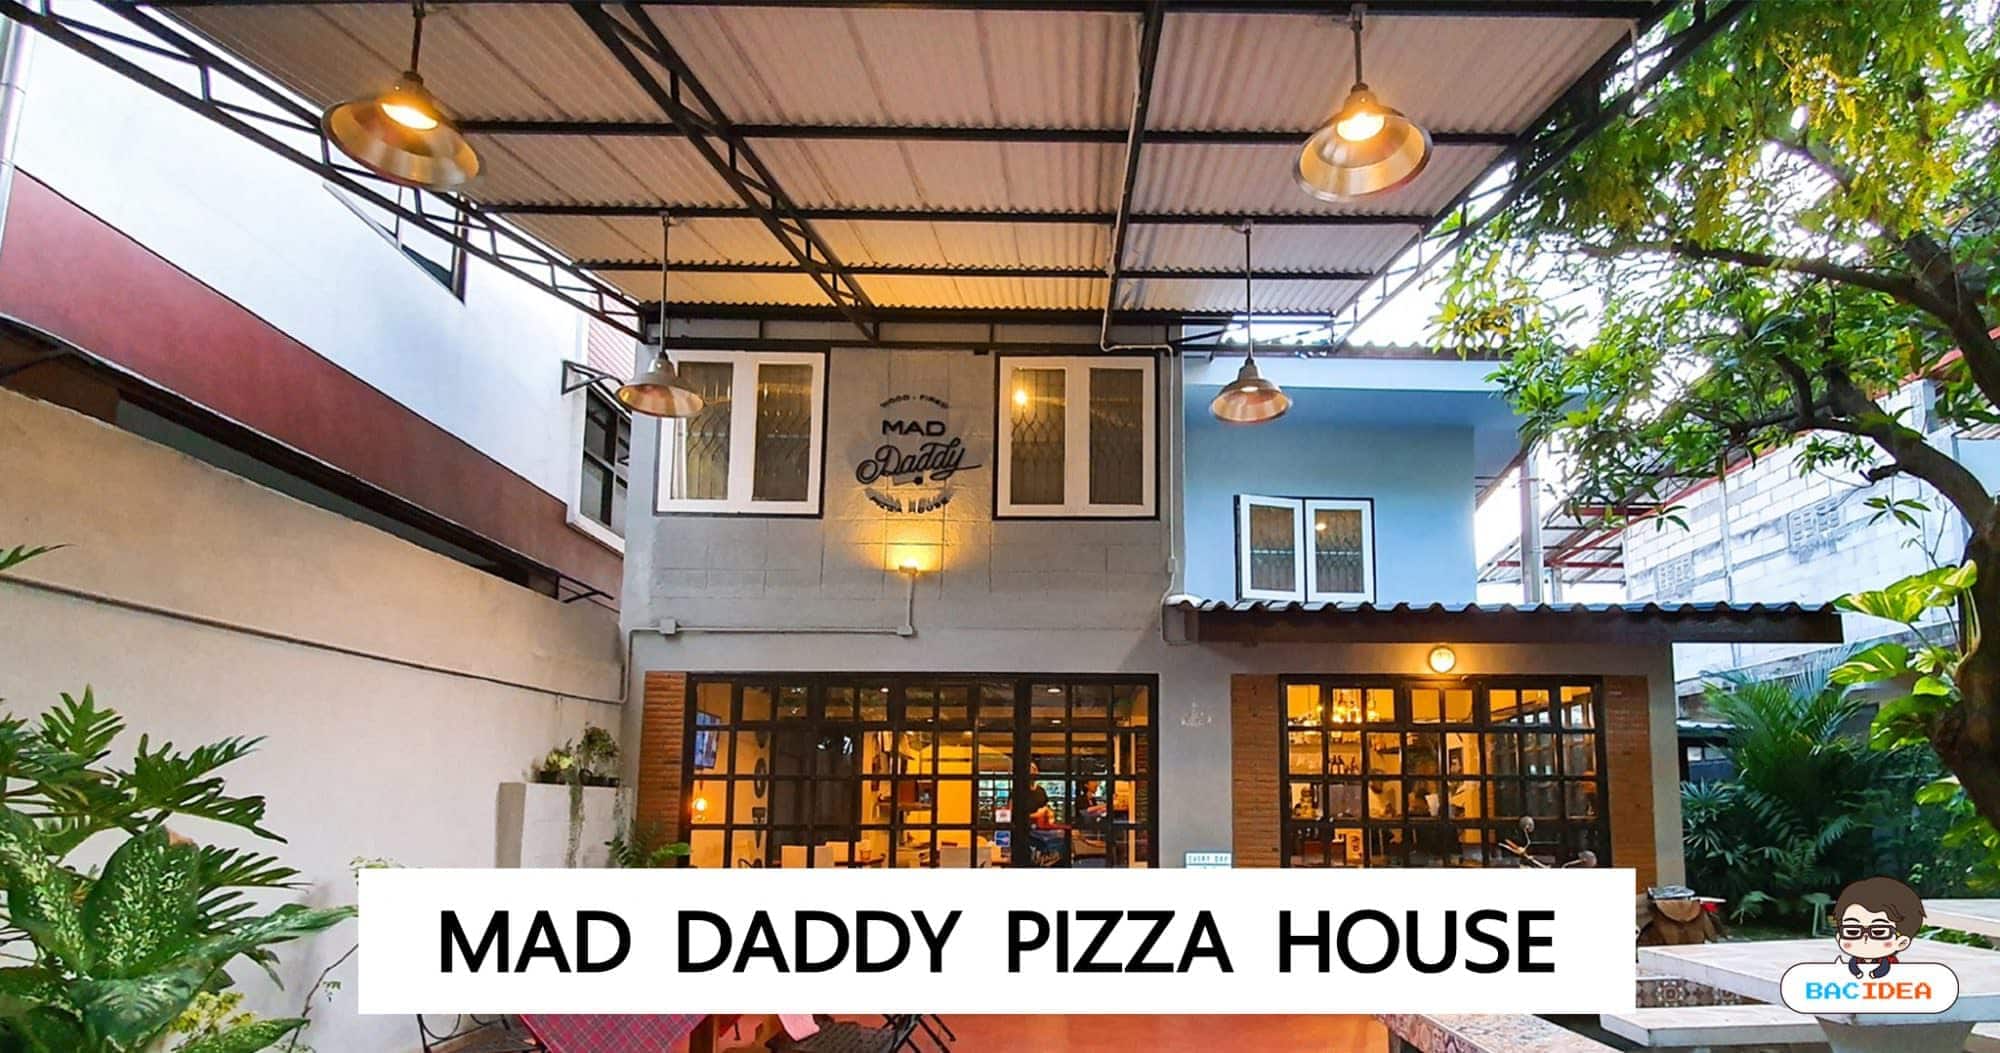 รีวิว Mad Daddy Pizza House ร้านพิซซ่าเตาฟืนในซอยลึกย่านท่าทราย หลังม. ธุรกิจบัณฑิต 21